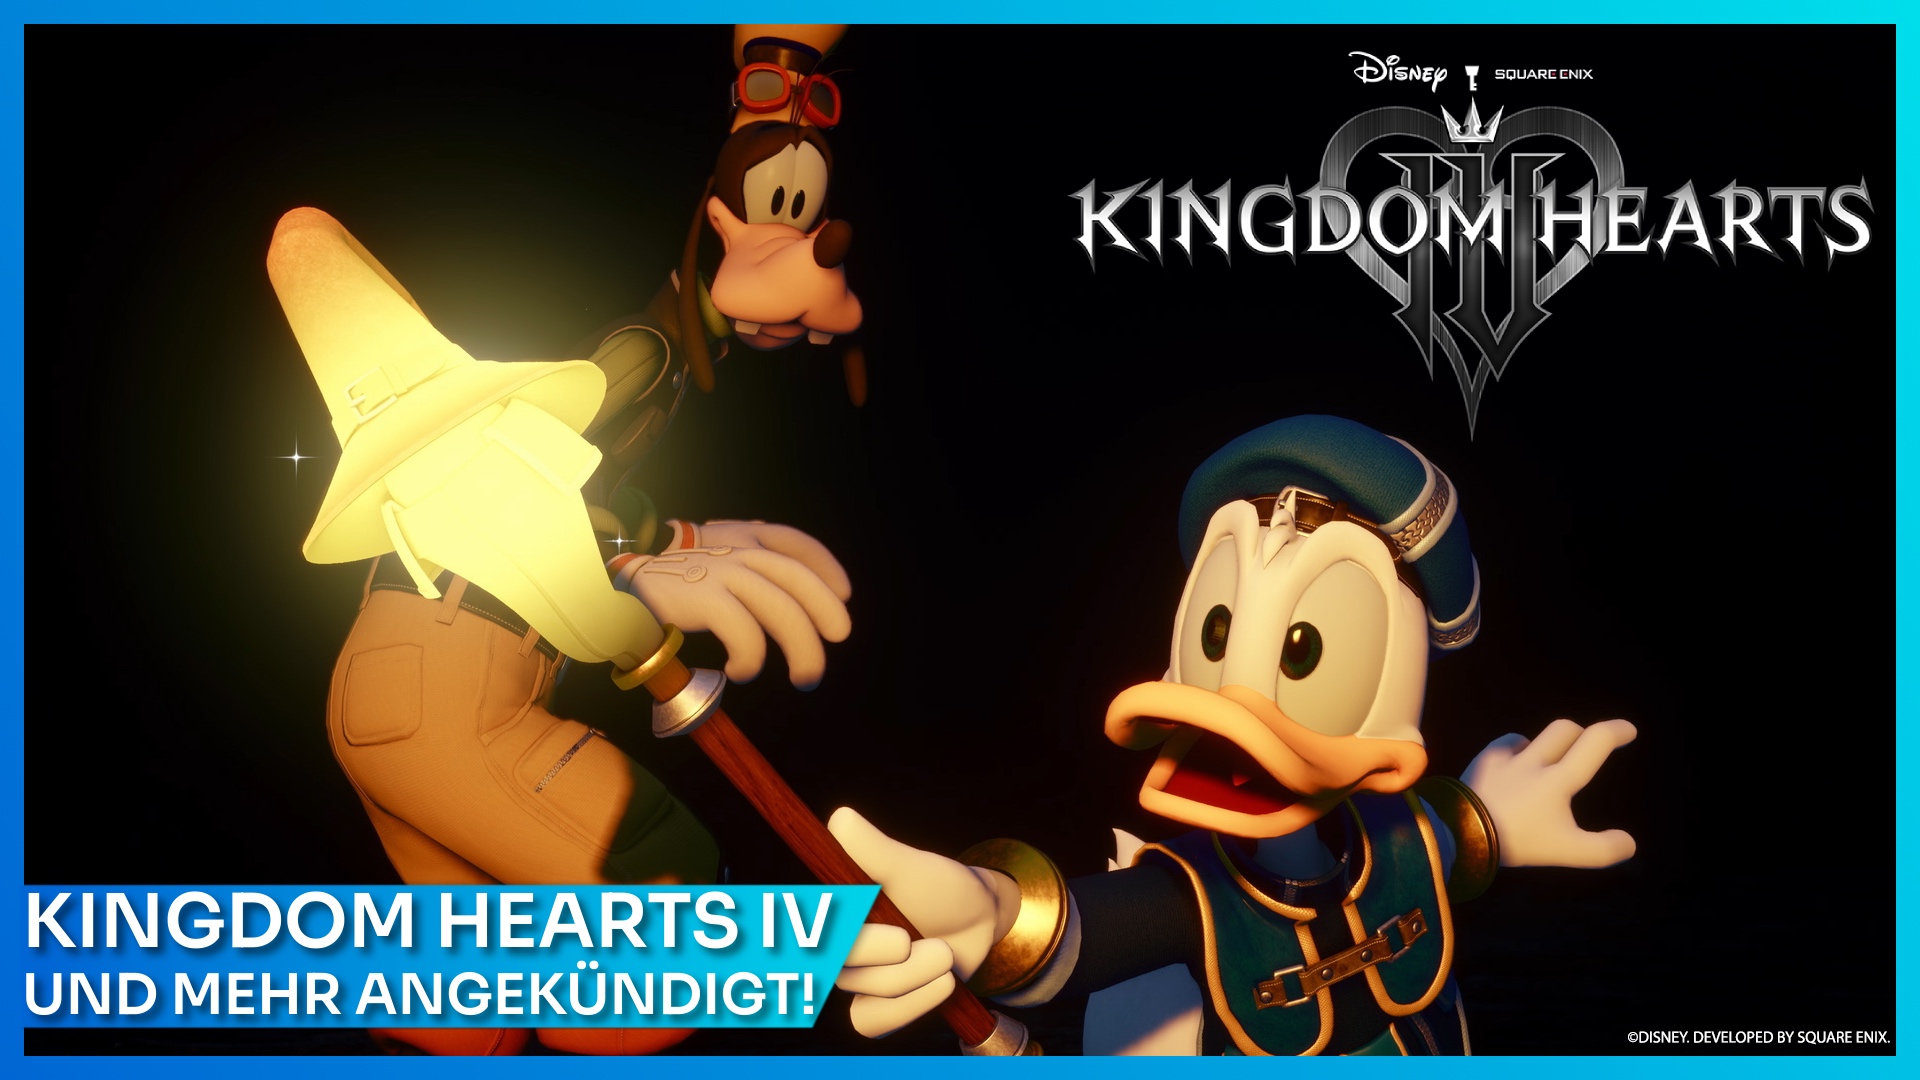 KINGDOM HEARTS IV mit Sora, Donald und Goofy wurde offiziell angekündigt